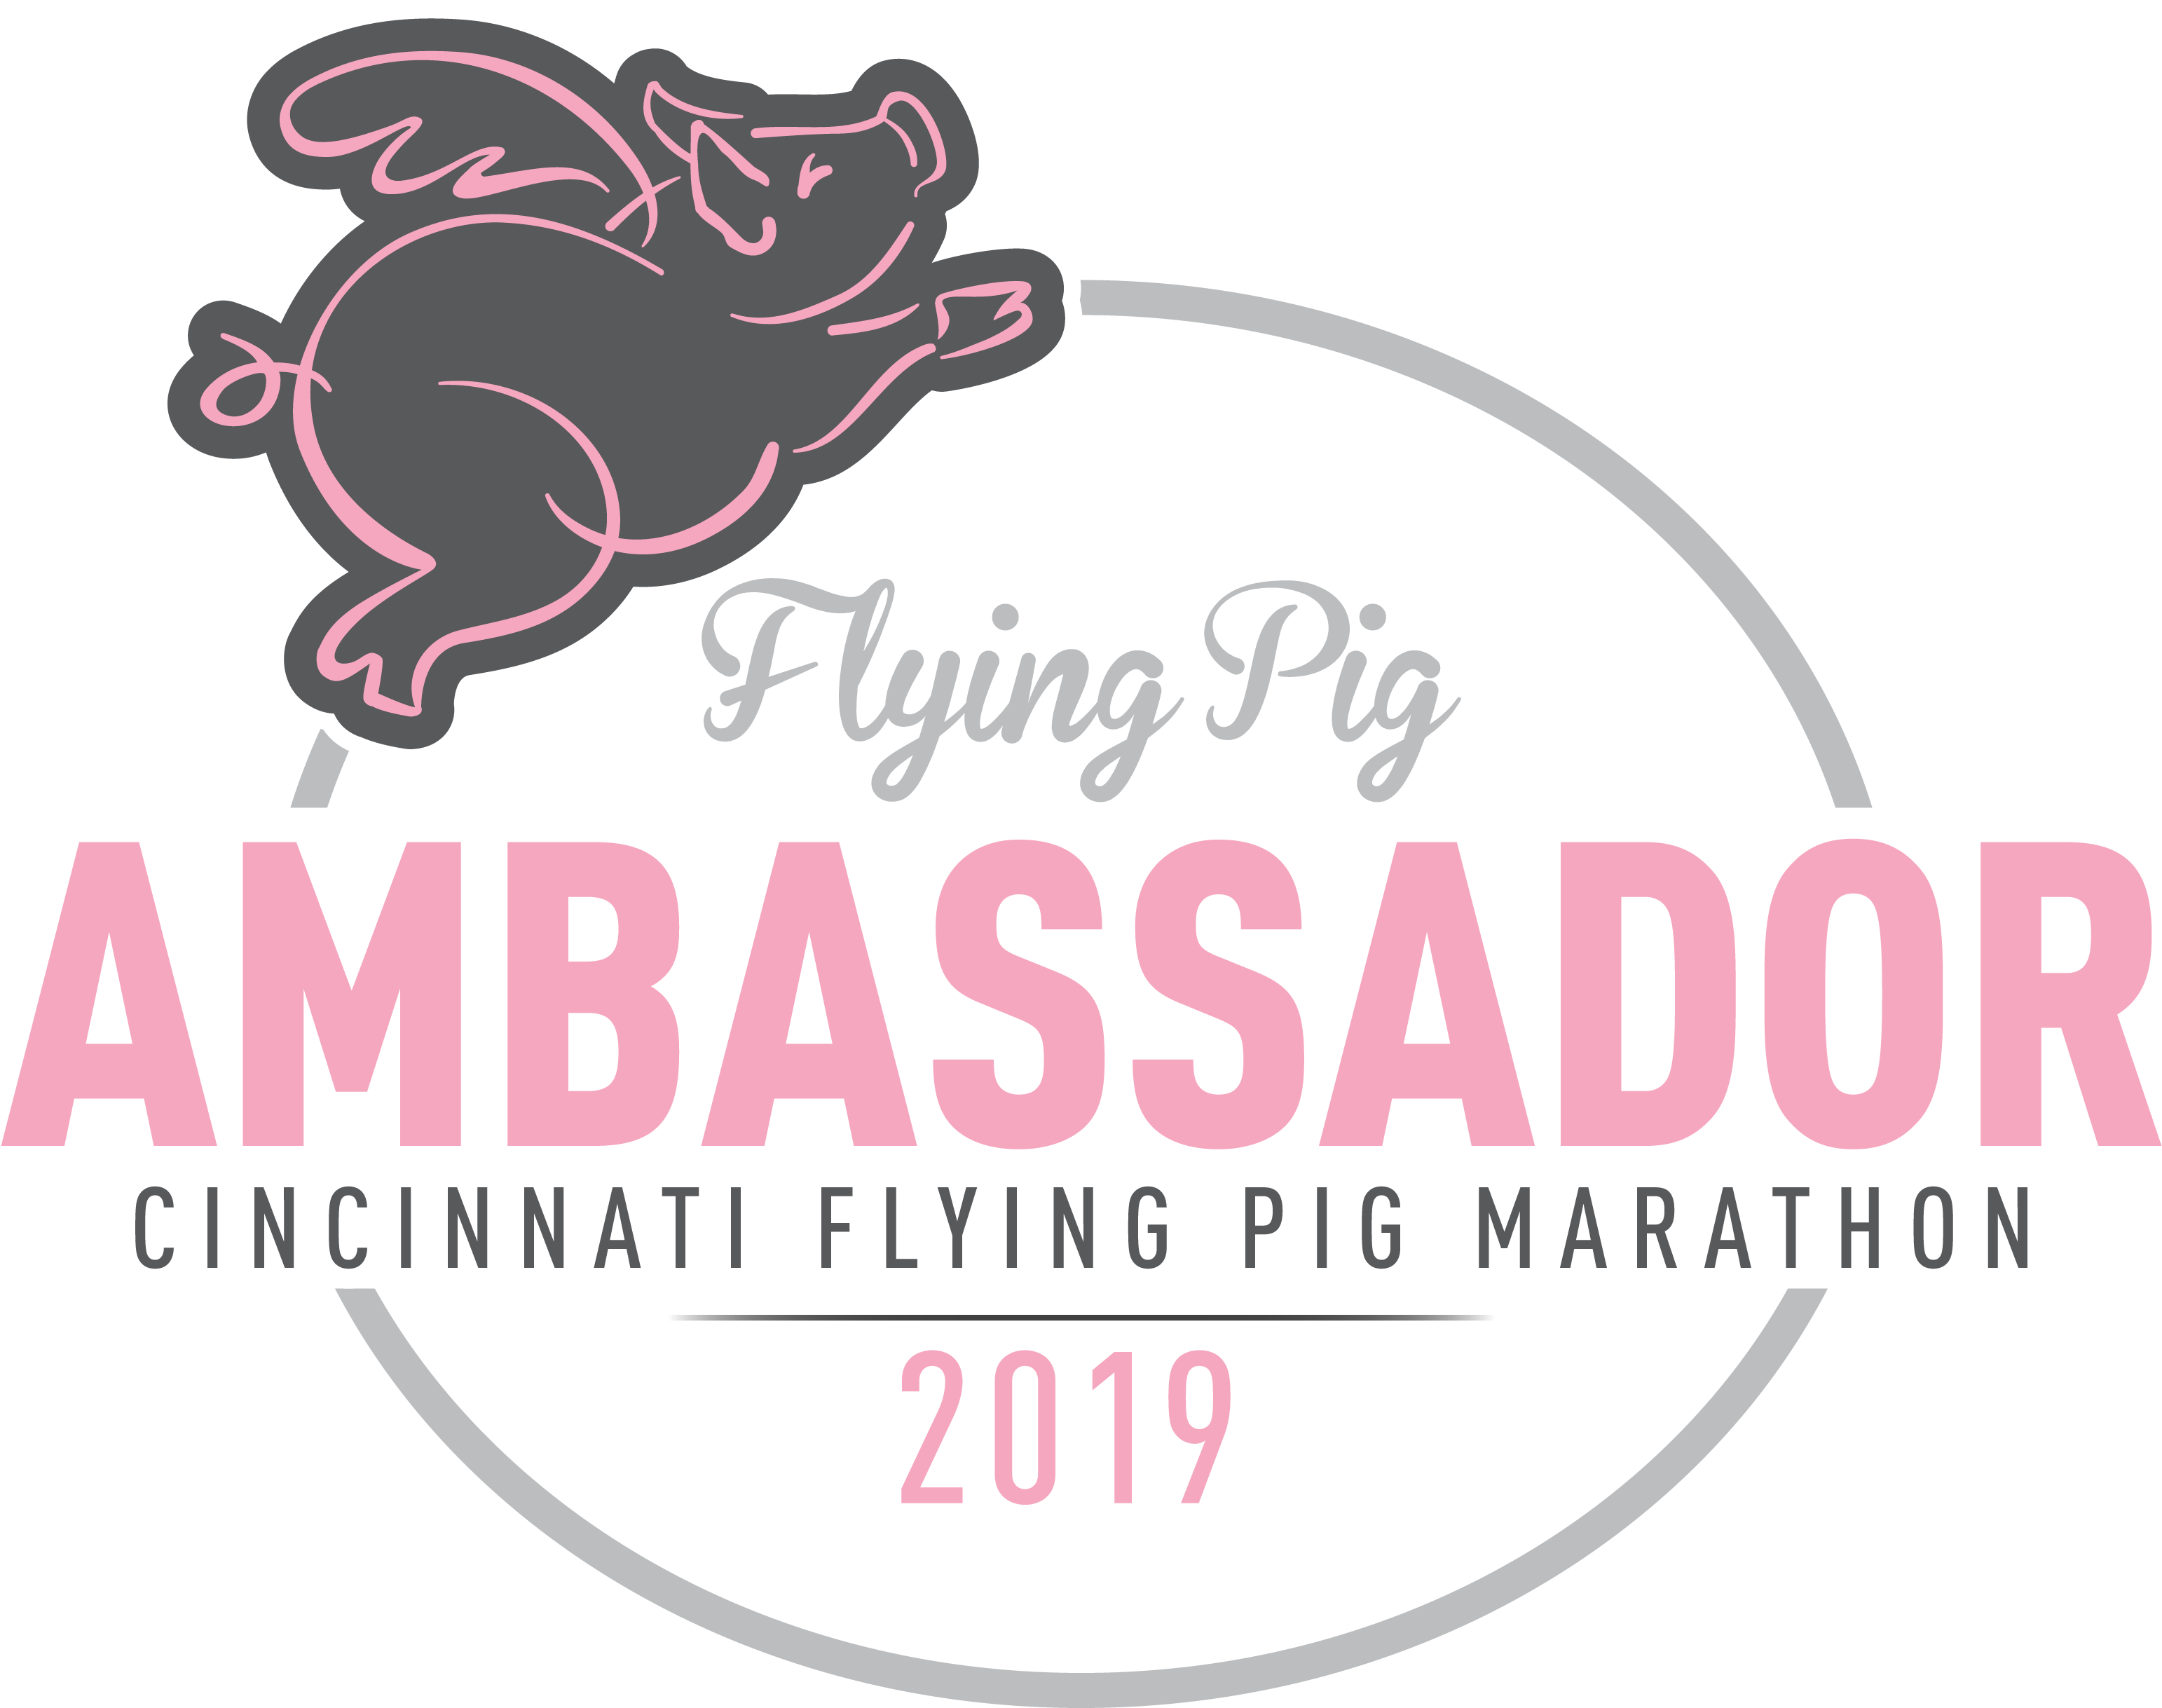 2019 Ambassadors - Flying Pig Marathon Clipart (3300x3300), Png Download